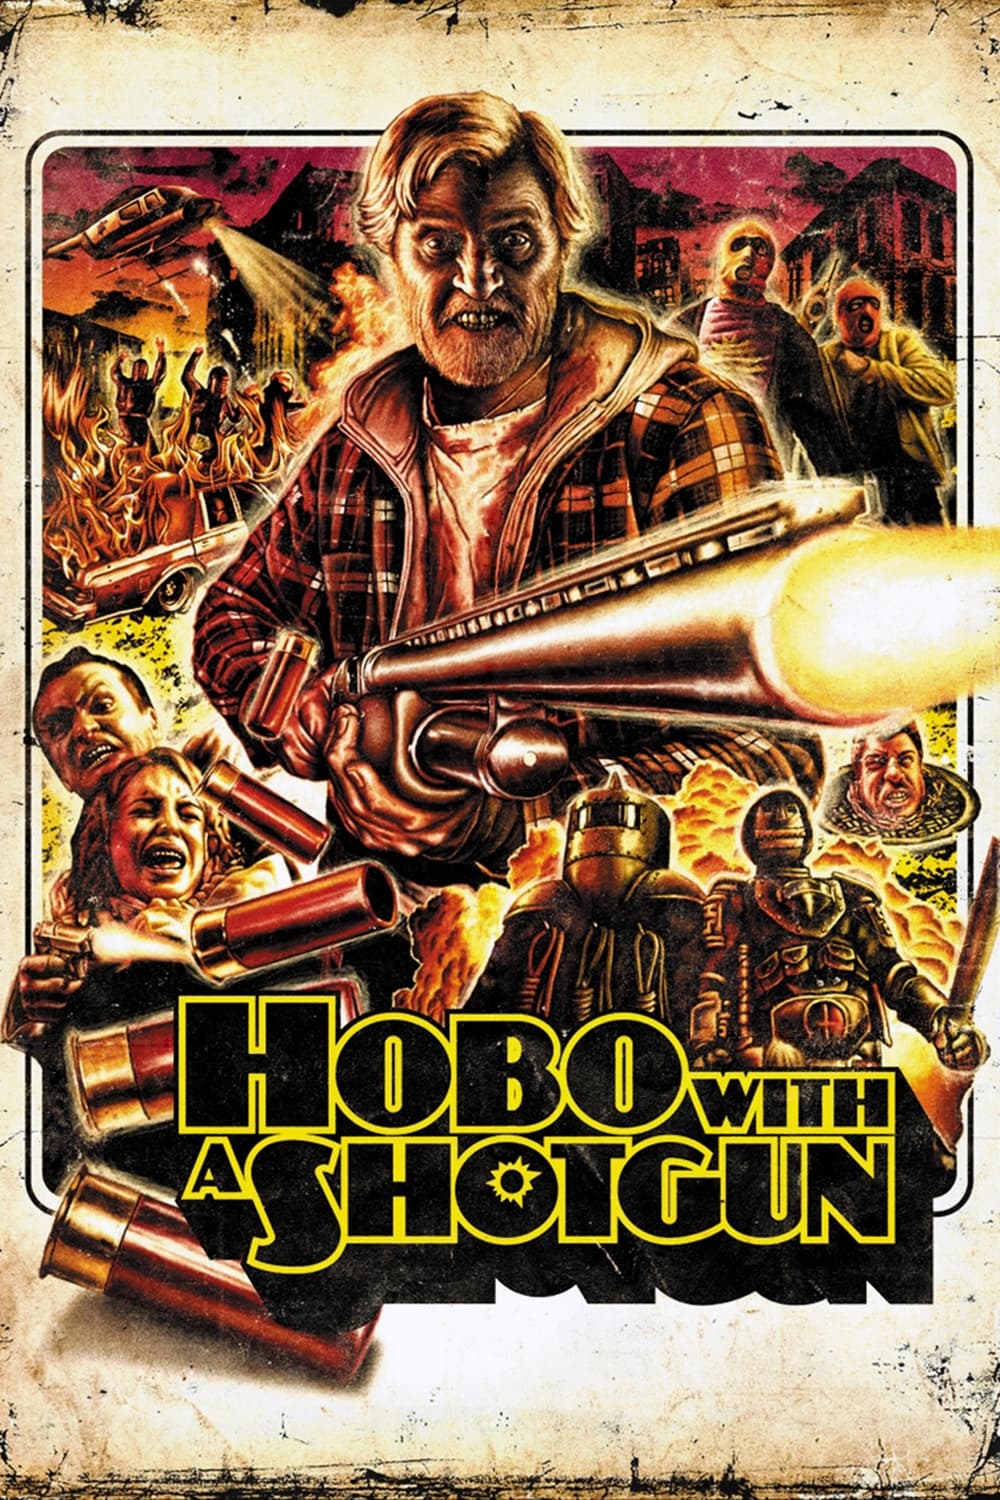 Hobo with a Shotgun (2011)